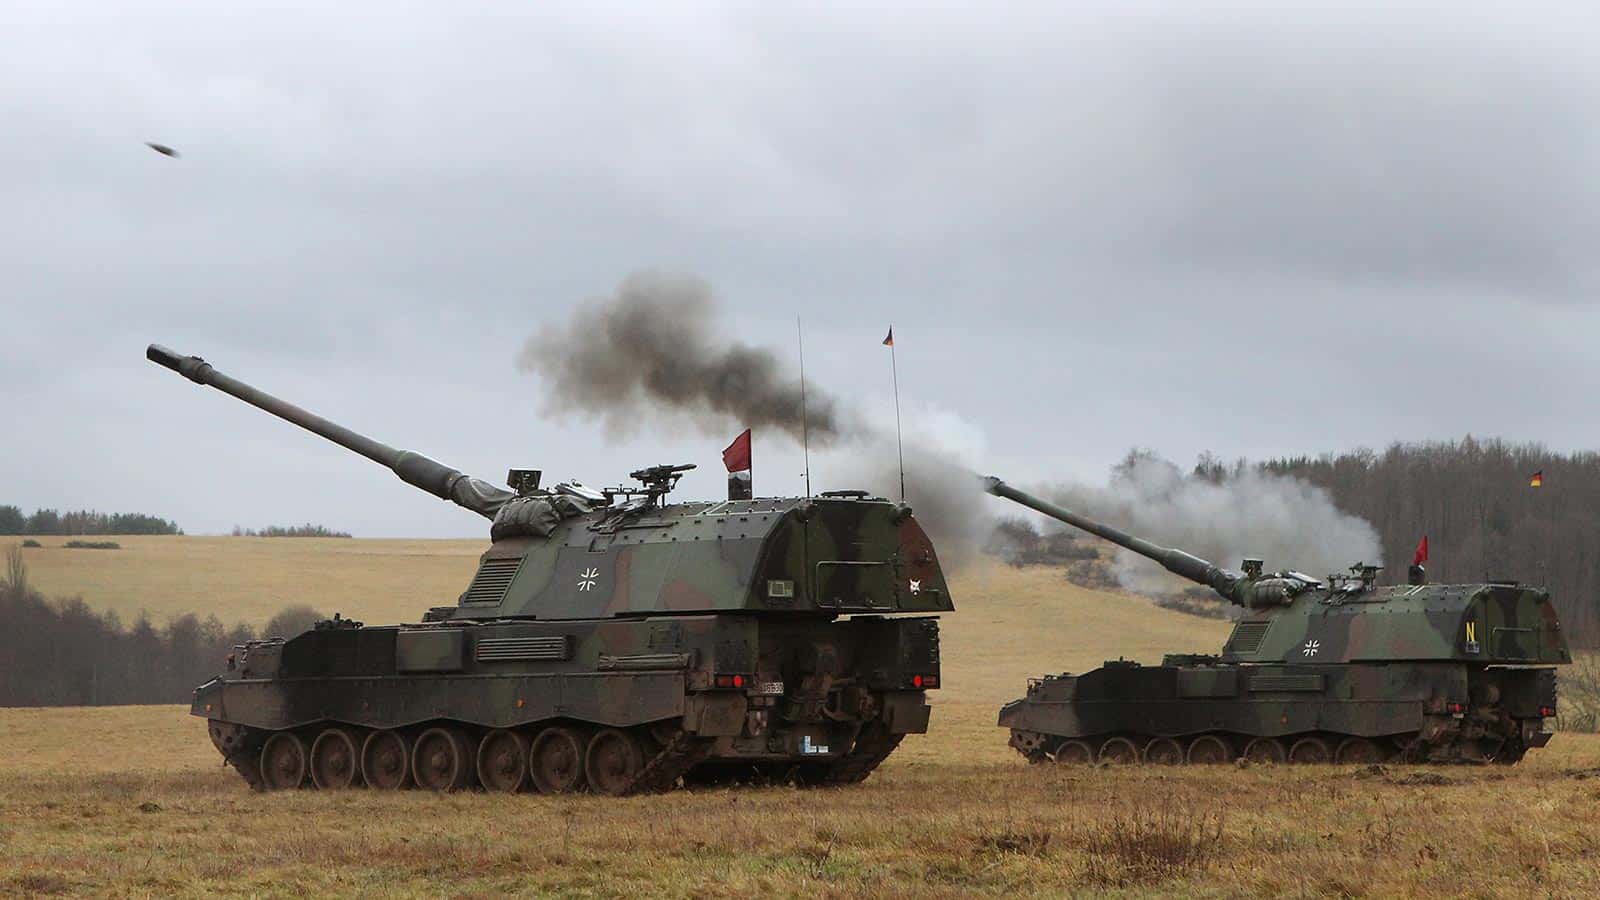 اوکراین دارای تفنگ های خودکششی 155 میلی متری PzH-2000 - نظامی خواهد بود